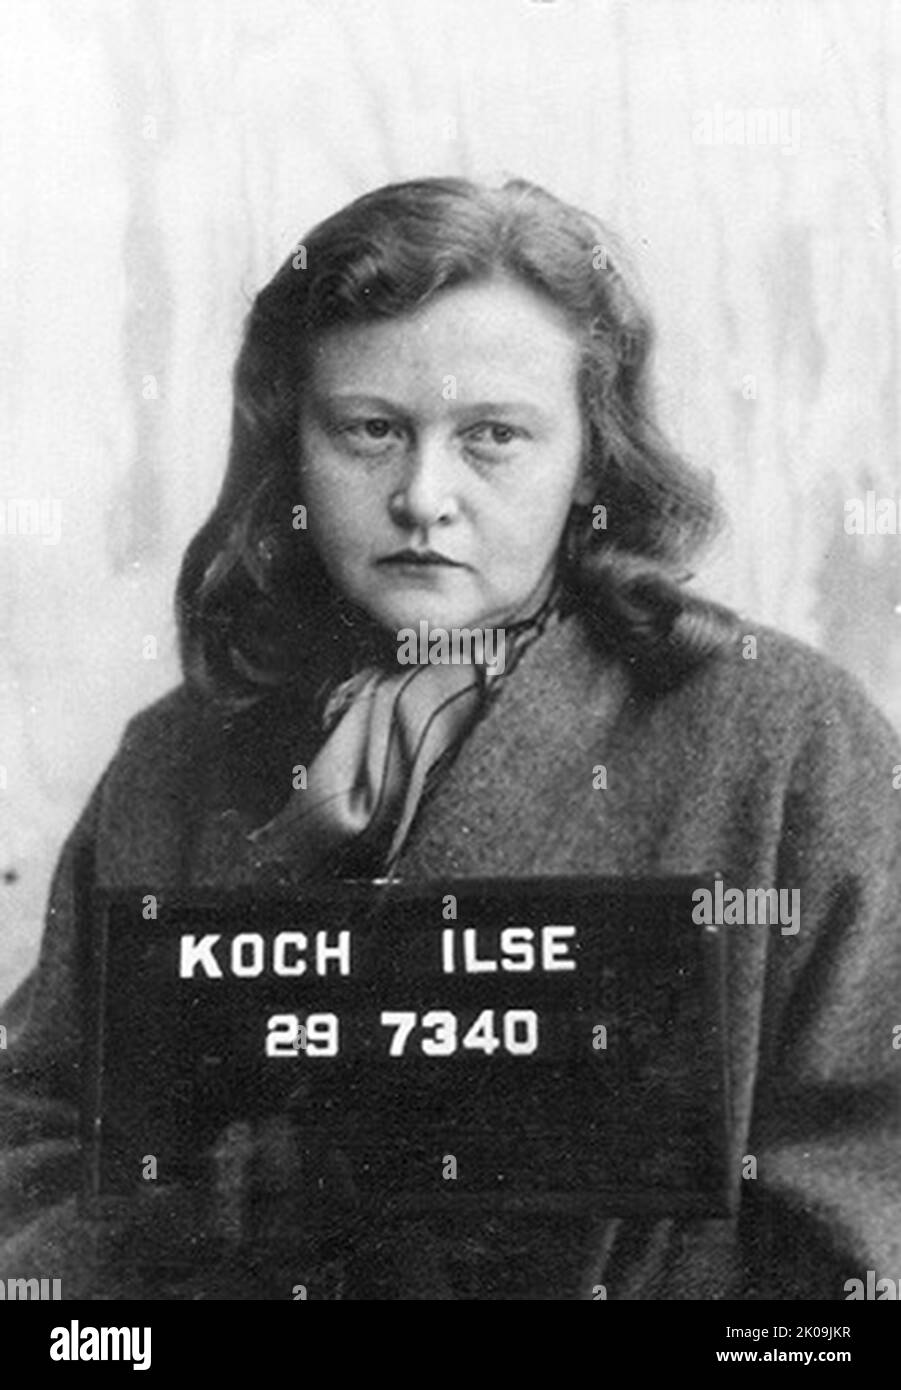 Ilse Koch (1906 - 1967) Nazi-Kriegsverbrecherin, die als Aufseherin in Nazi-Konzentrationslagern von ihrem Mann, Kommandant Karl-Otto Koch, geführt wurde. Koch arbeitete in Buchenwald (1937-1941) und Majdanek (1941-1943) und wurde berühmt für ihre sadistische, brutale Behandlung von Gefangenen. 1947 wurde sie eine der ersten prominenten Nazis, die vom US-Militär verurteilt wurde. Stockfoto